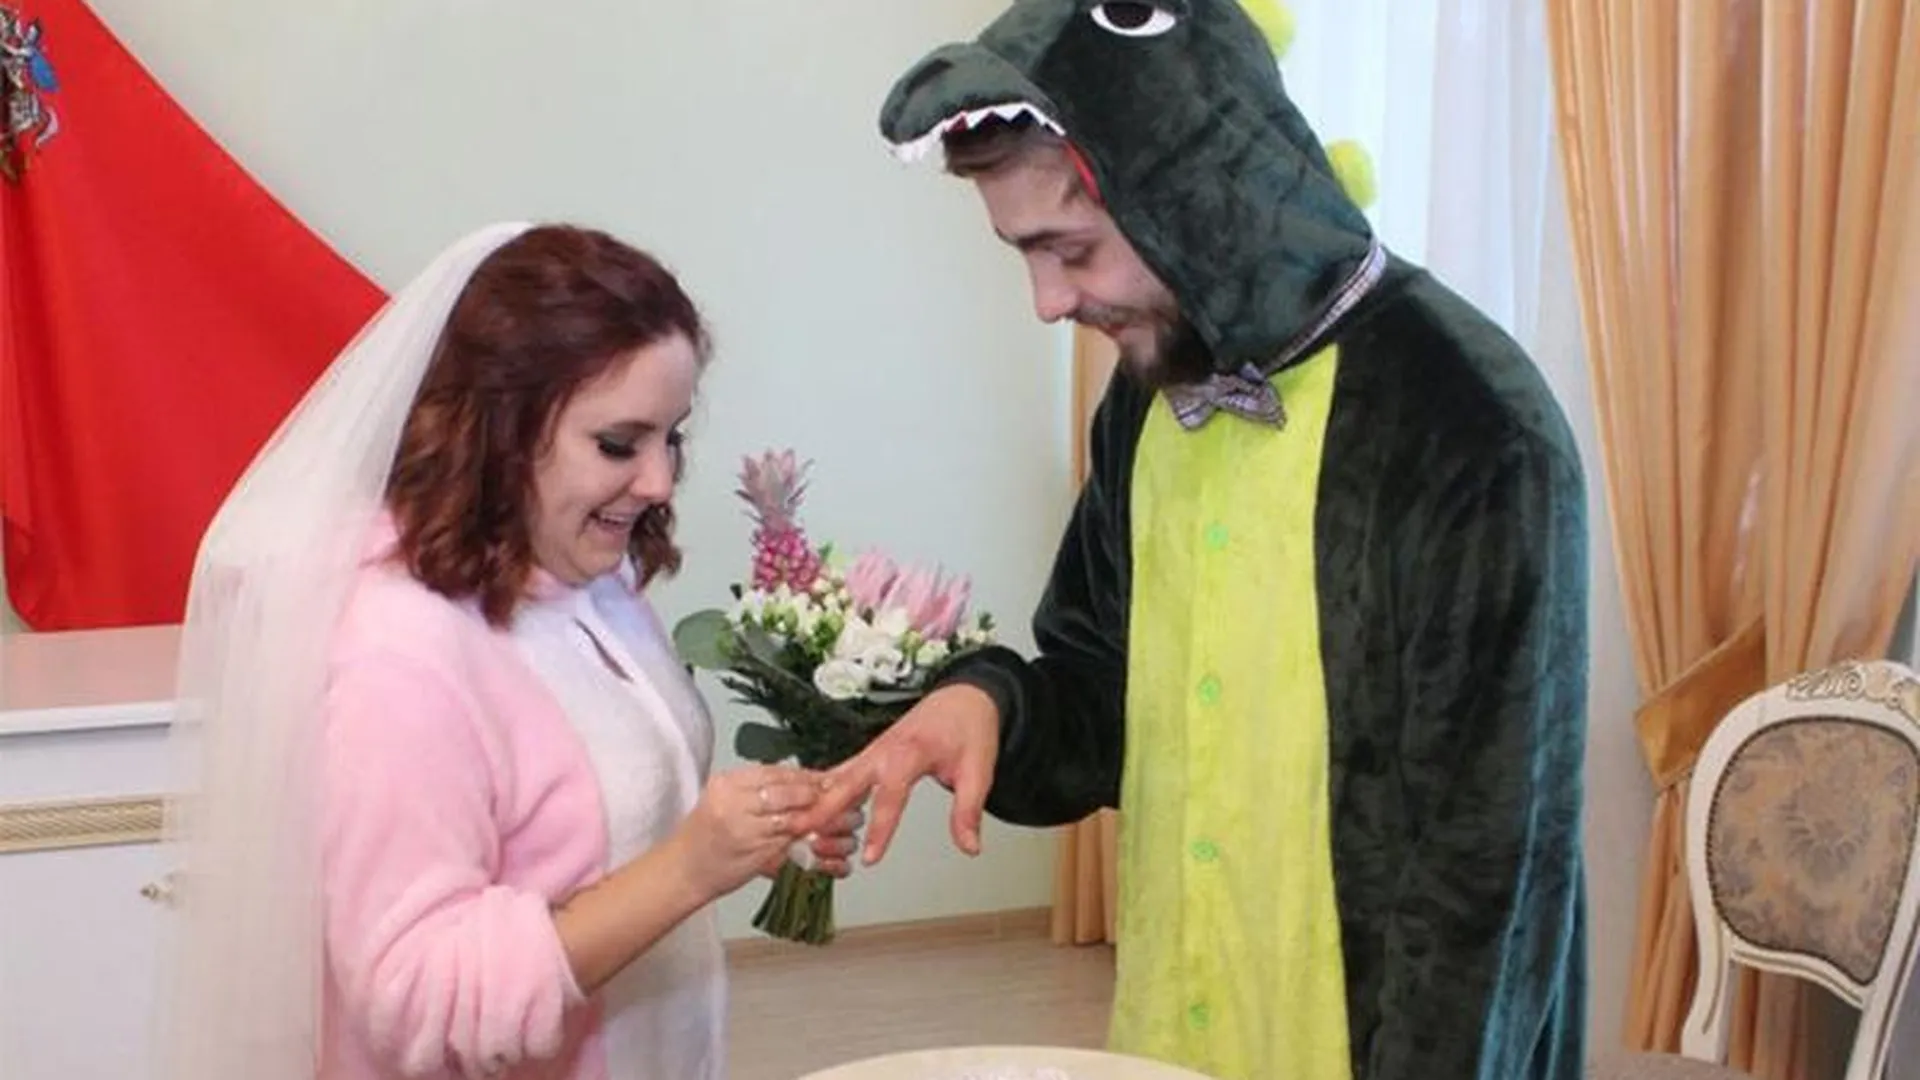 Динозавры и рокеры: жители Подмосковья предпочитают костюмированные свадьбы